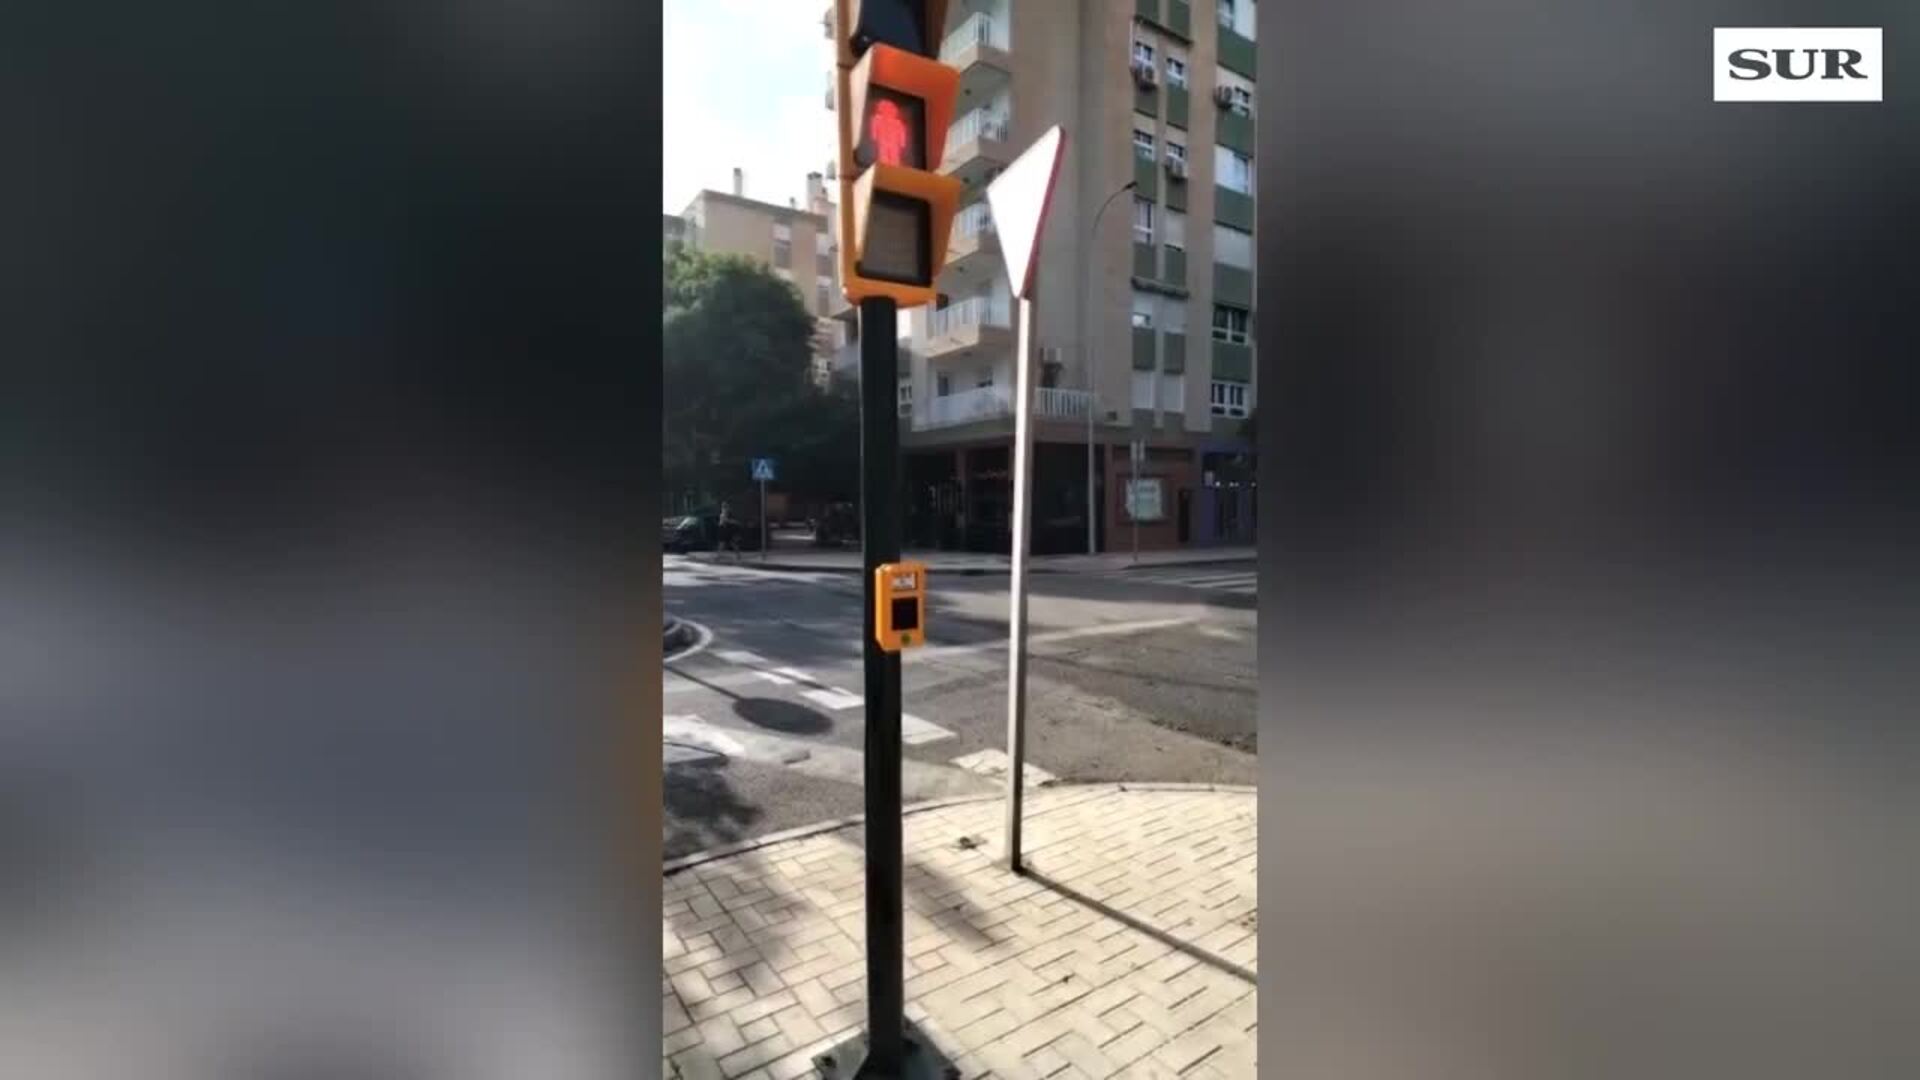 El semáforo de Chiquito en Málaga no funciona bien: quejas de los vecinos por su continuos fallos